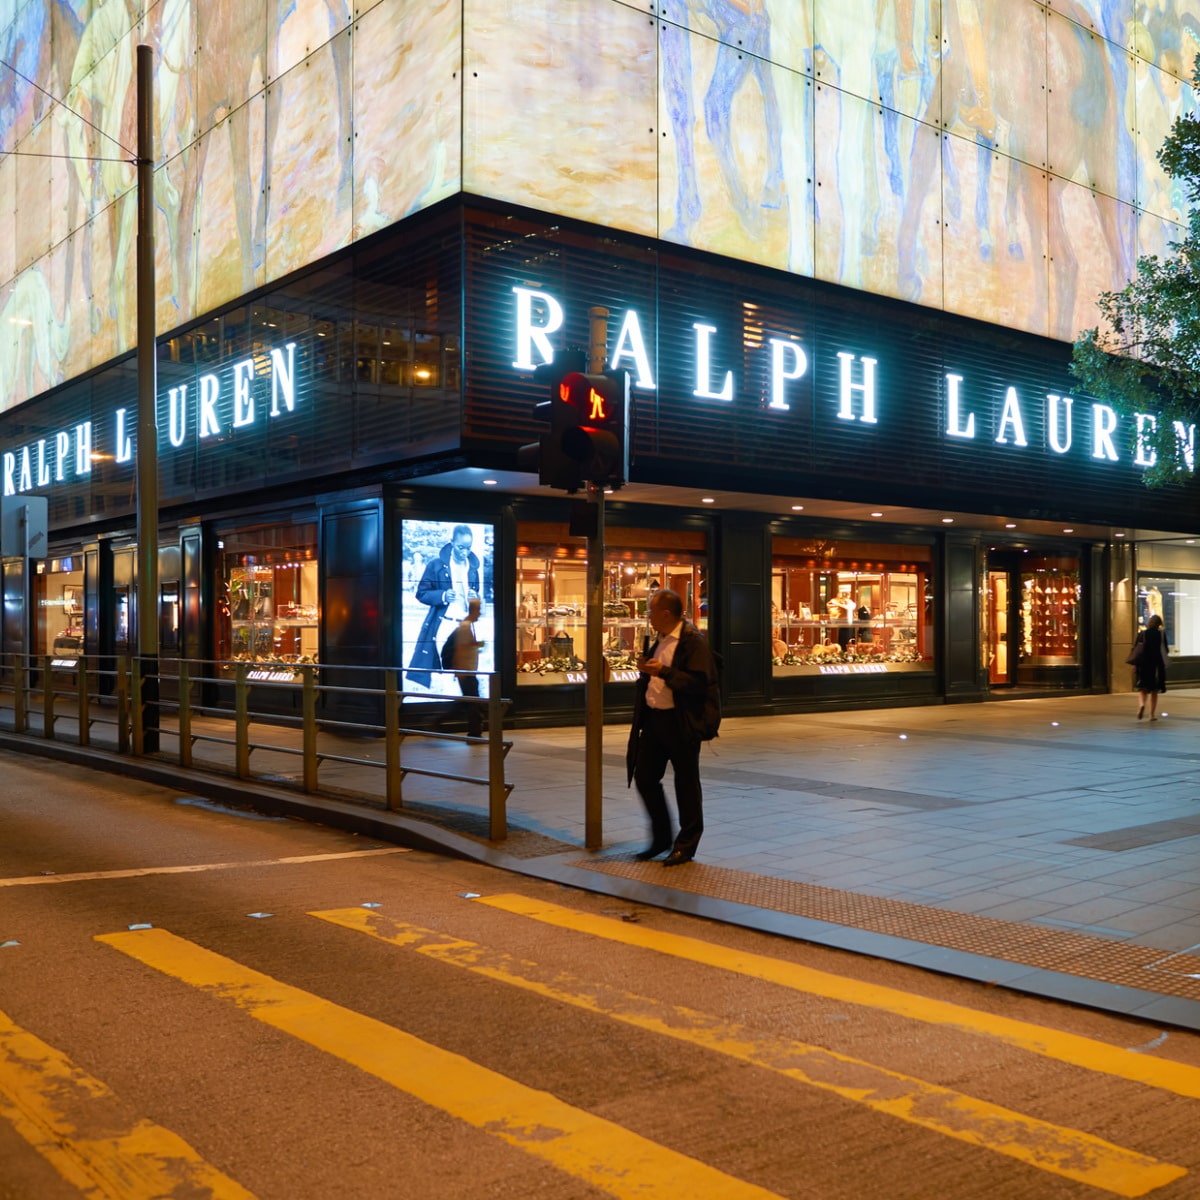 Size guide : How Ralph Lauren's pants fits ? - Graduate Store